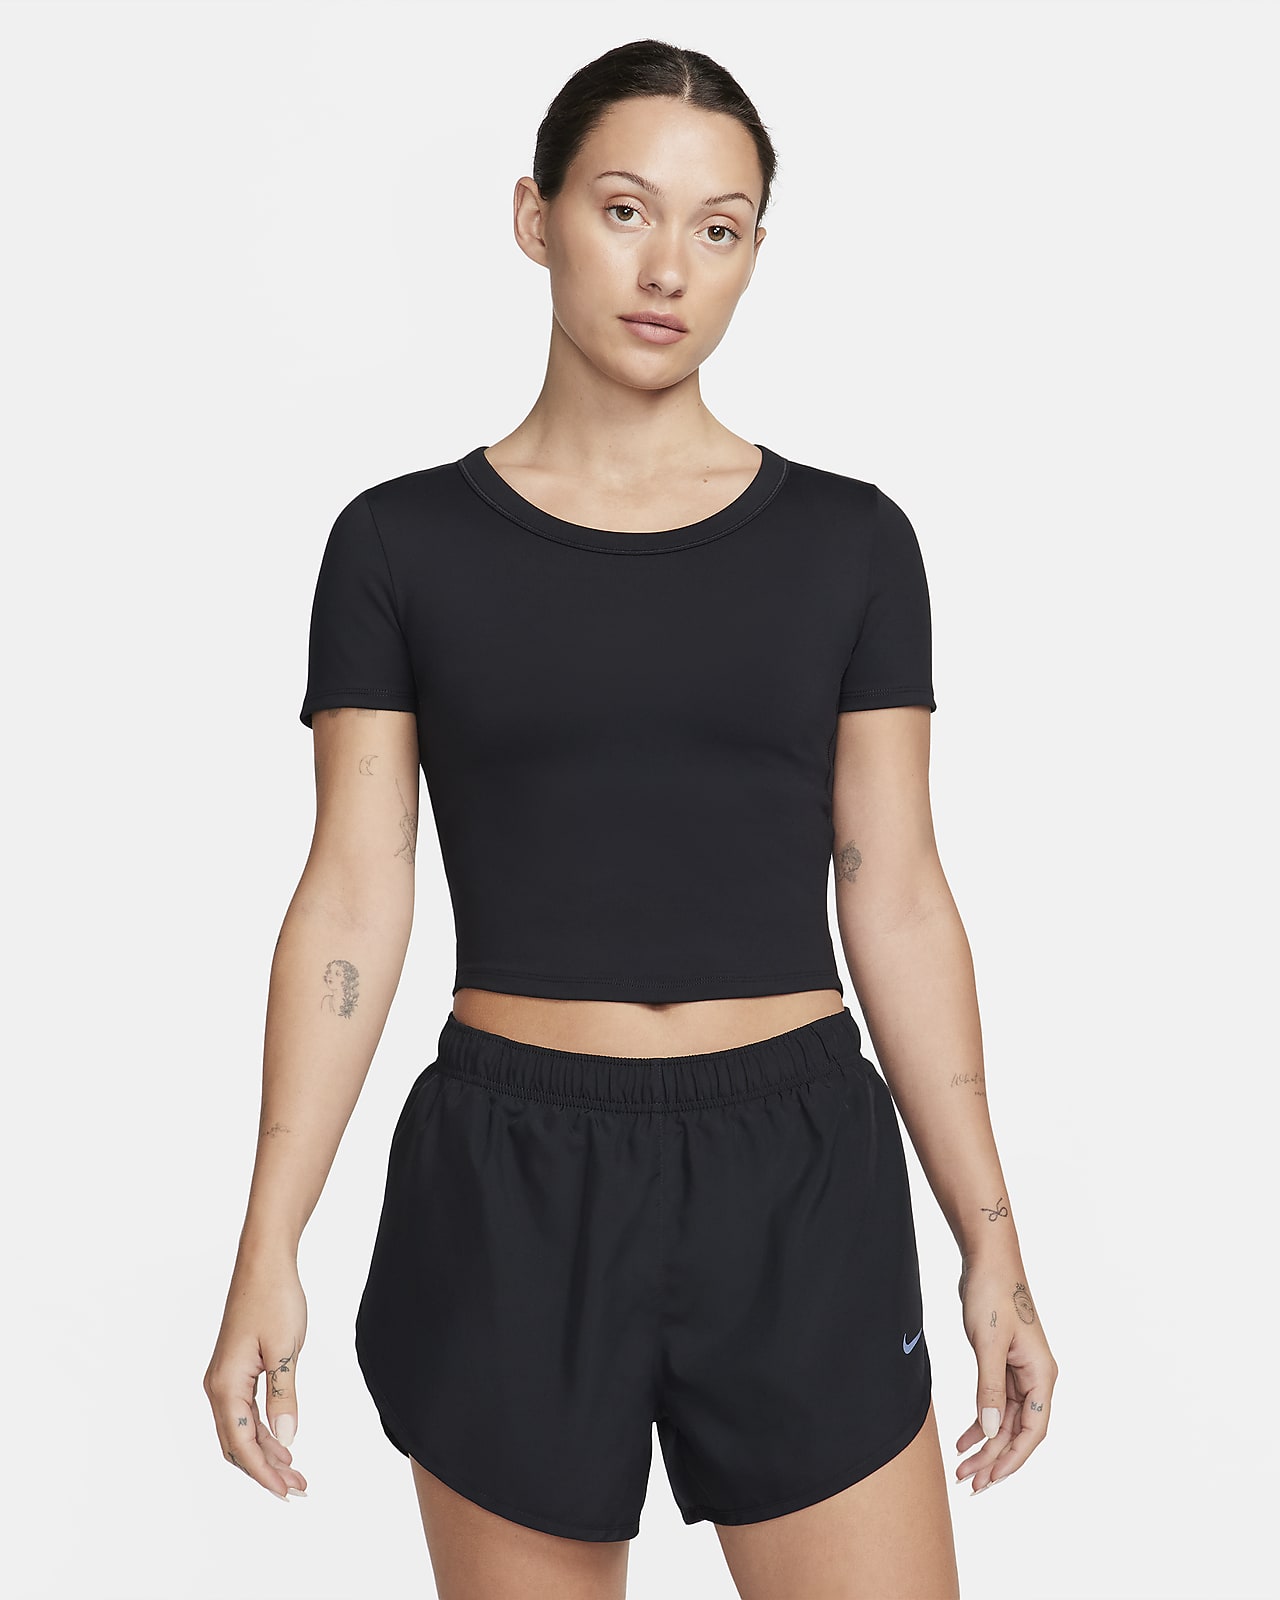 Nike One Fitted Dri-FIT Crop Top mit kurzen Ärmeln für Damen